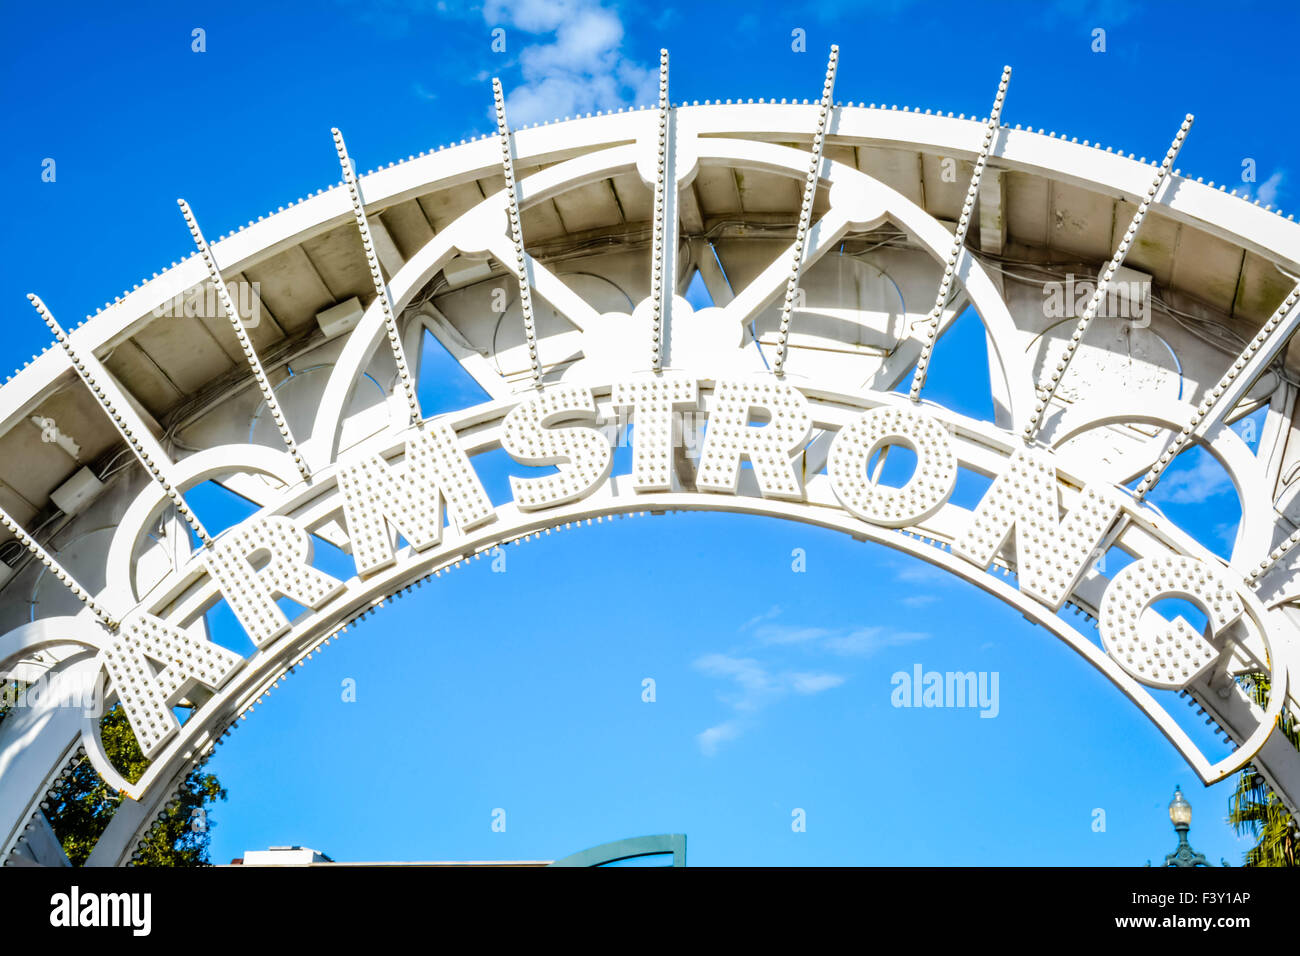 La circolare cancello di ferro e metallo ingresso ad arco all'impressionante Armstrong Park nell'treme area di New Orleans, LA Foto Stock